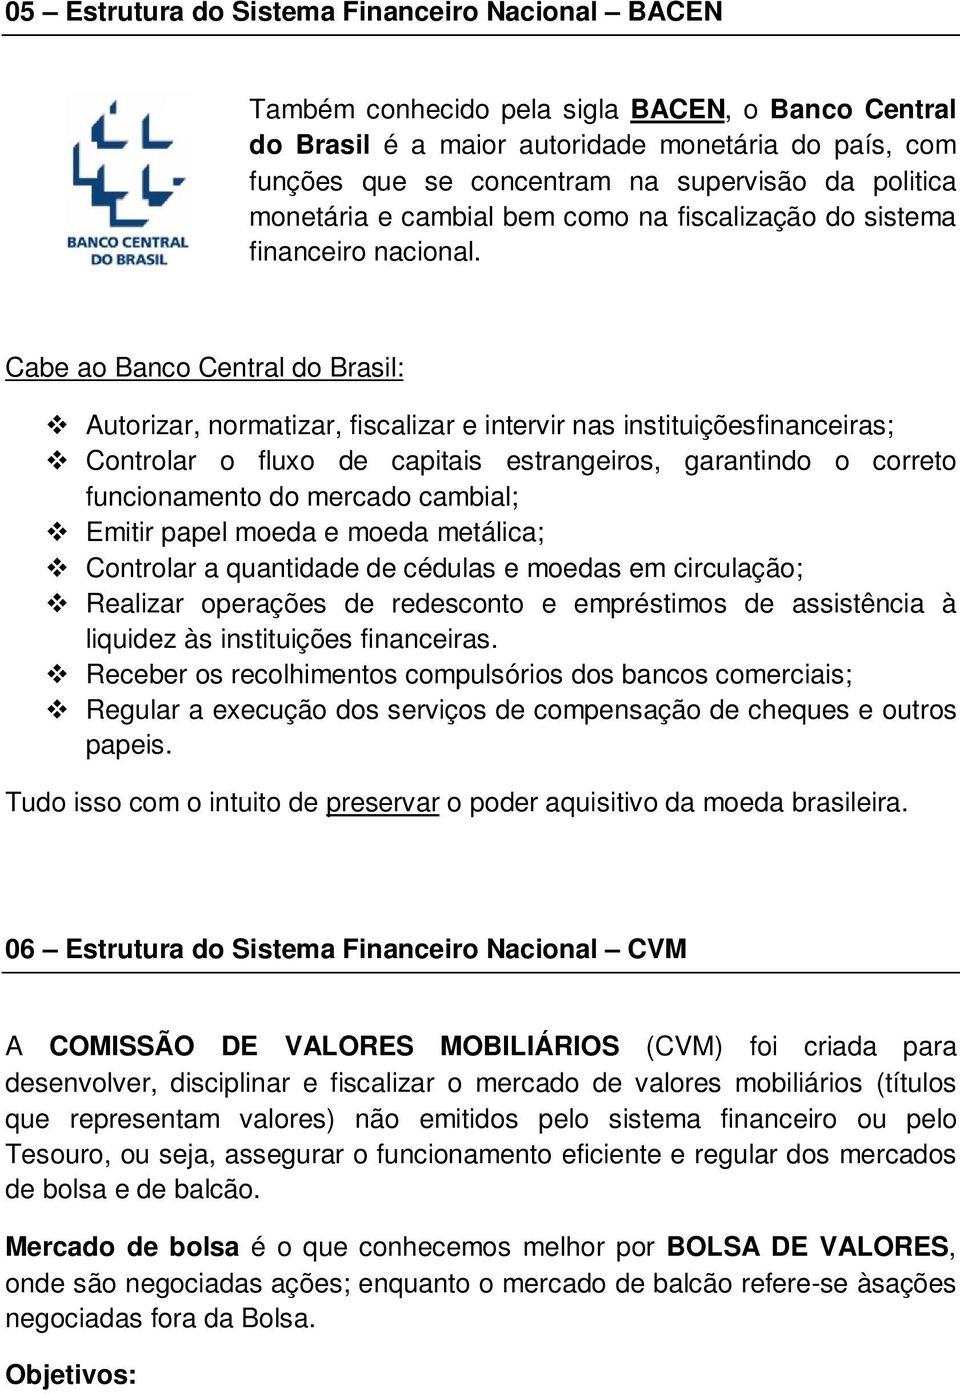 Cabe ao Banco Central do Brasil: Autorizar, normatizar, fiscalizar e intervir nas instituiçõesfinanceiras; Controlar o fluxo de capitais estrangeiros, garantindo o correto funcionamento do mercado